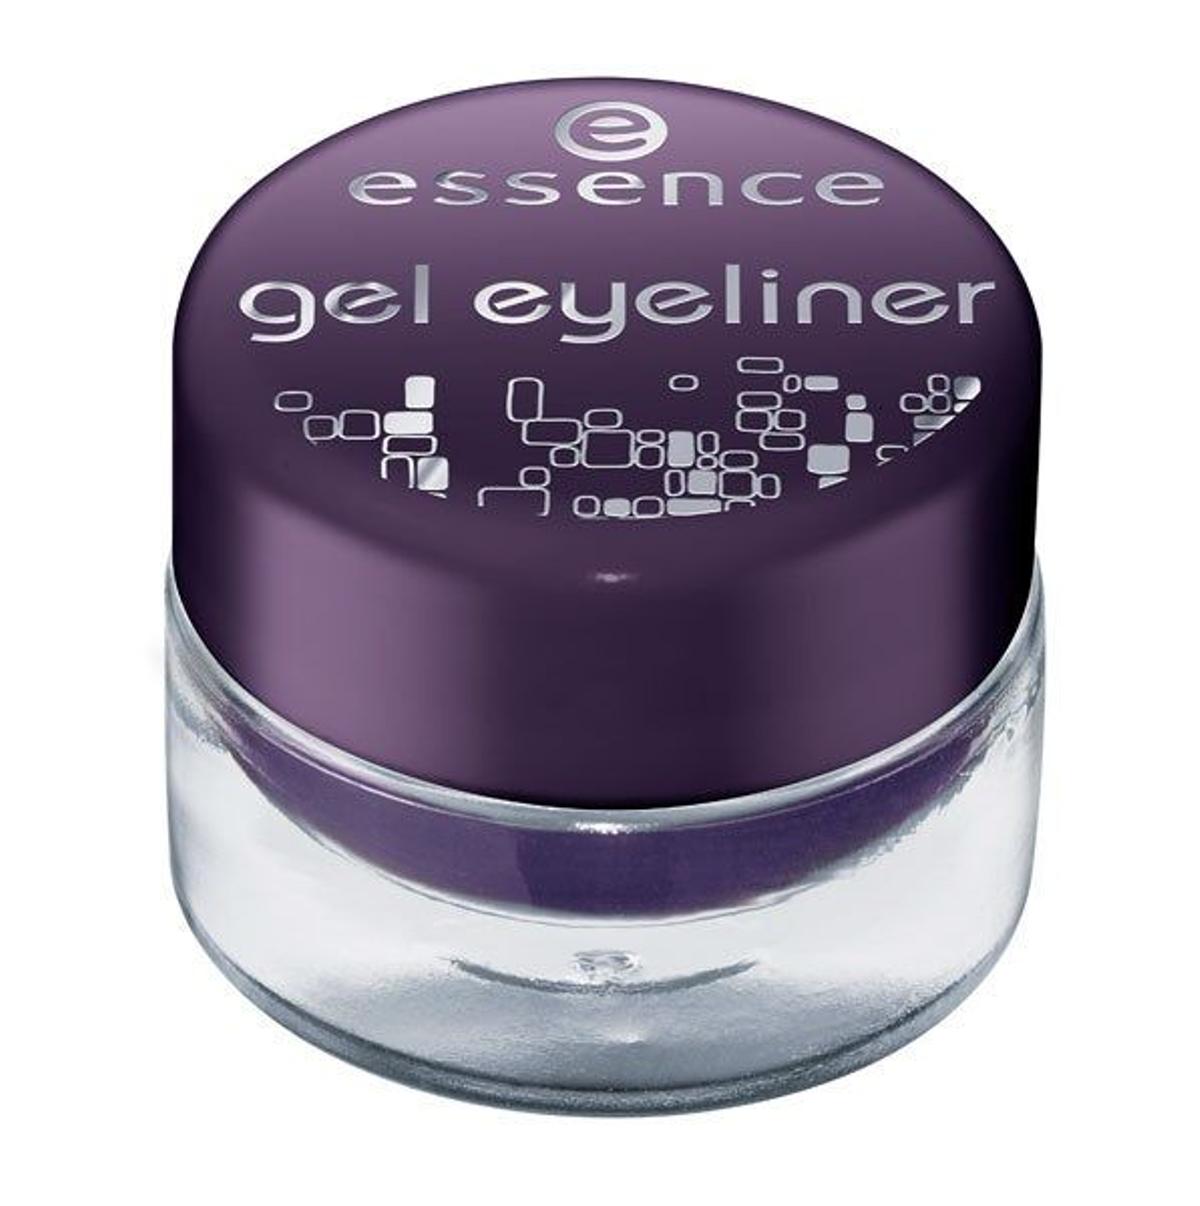 Gel eyeliner